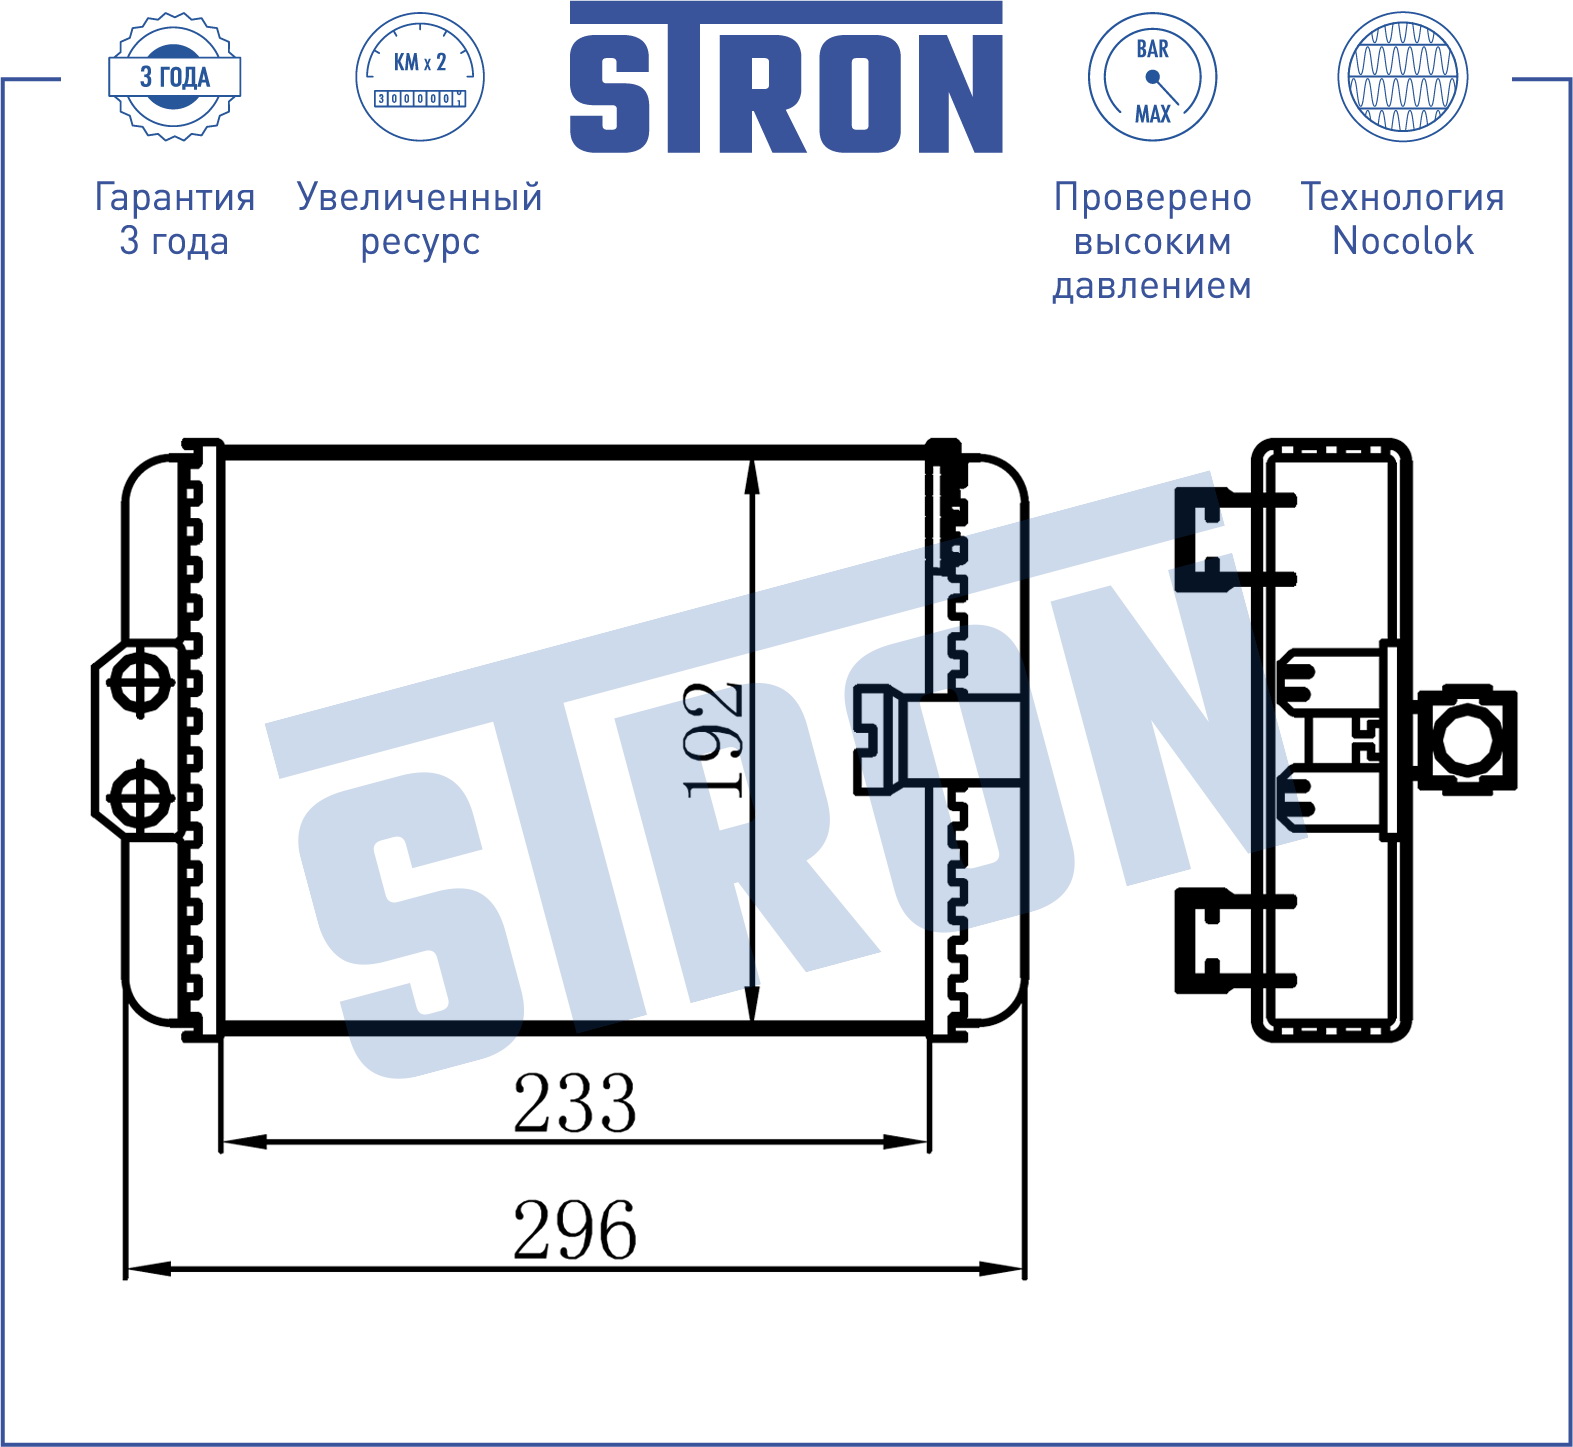 STRON - Радиатор отопителя (Гарантия 3 года, Увеличенный ресурс)